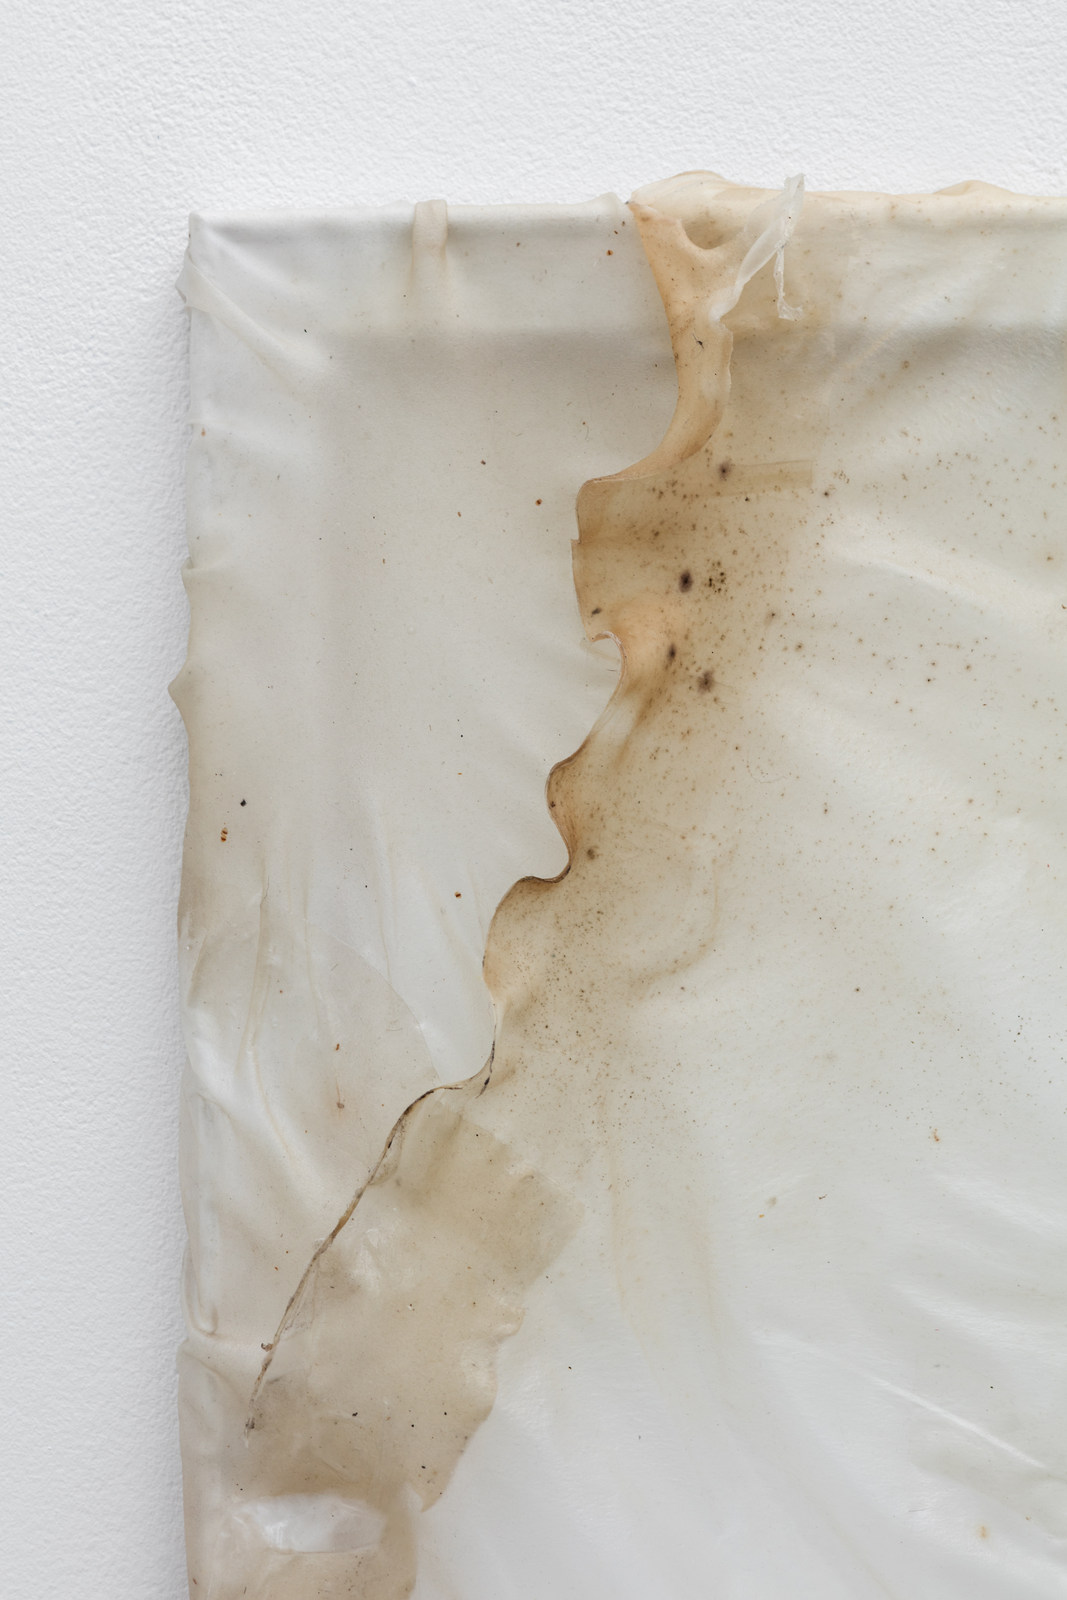 18.Aude Pariset. Me╠ünage Garbage Patch 2, 2016. Bioplastic, mold, wood, paint, 55 x 110 cm 2